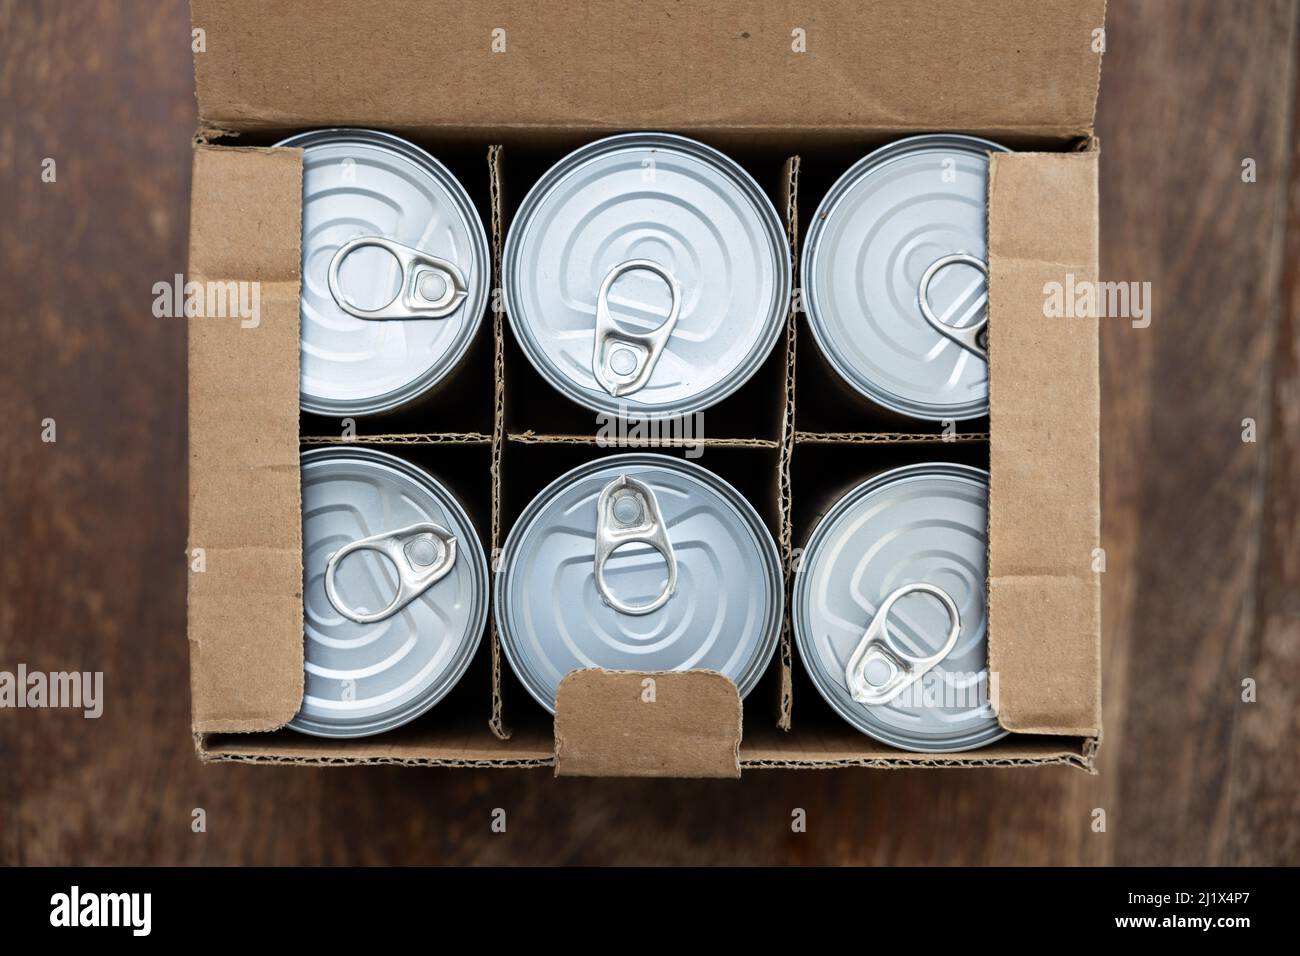 Lebensmitteldosen in einem offenen Karton auf einem Holztisch. Konzeptbild für Störungen der Lieferkette, Nahrungsmittelknappheit, Lagerbestände in Kriegszeiten. Stockfoto